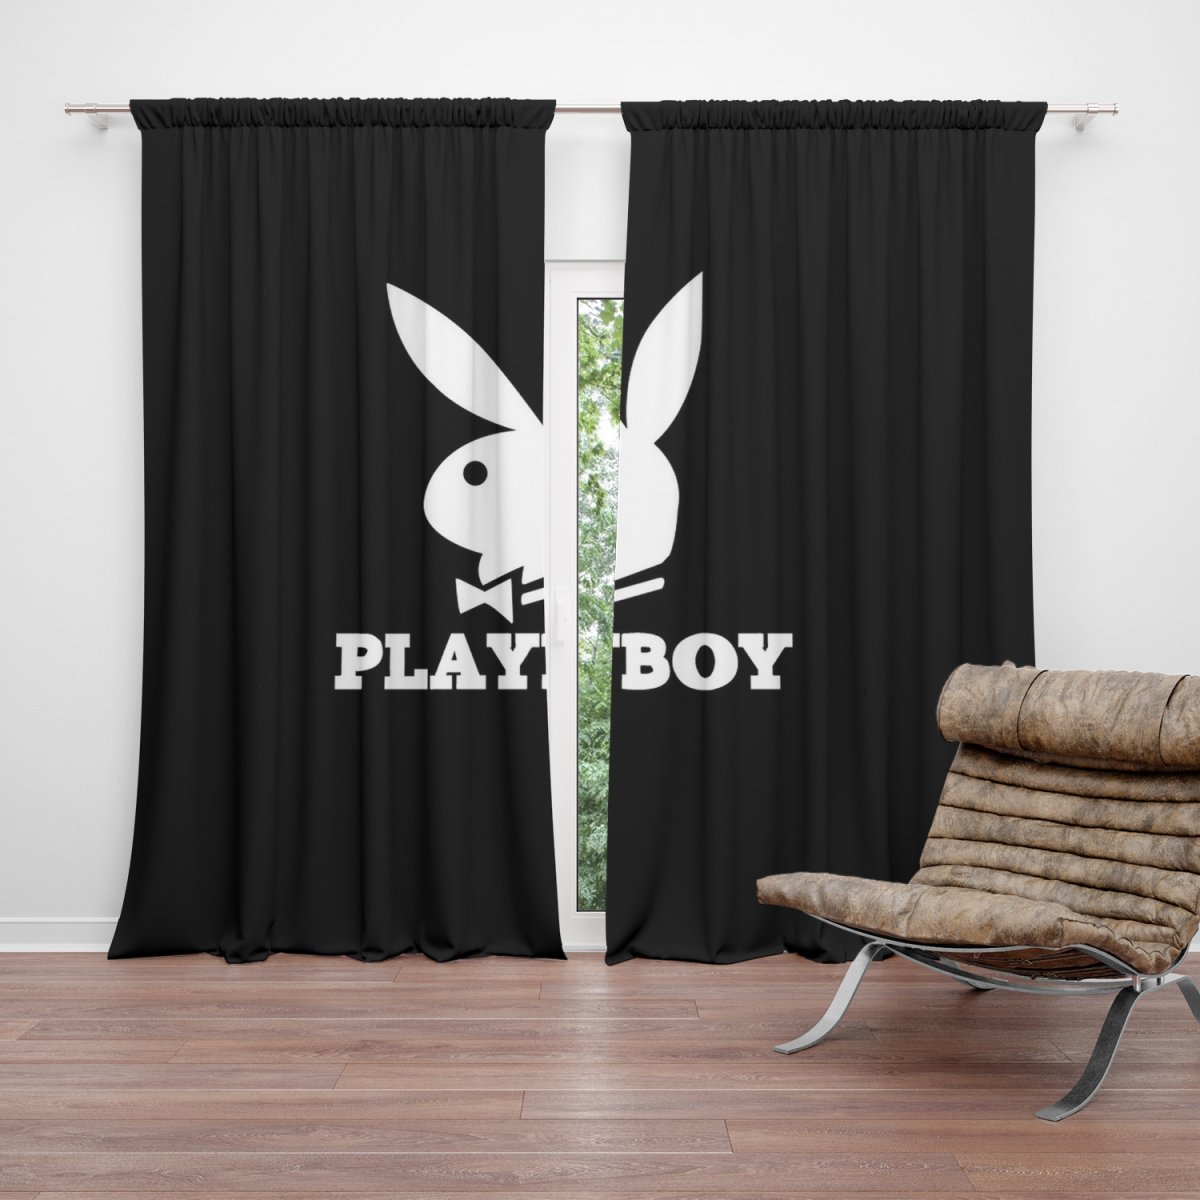 Zatemňovací závěs Playboy 2: 2ks 140x250cm